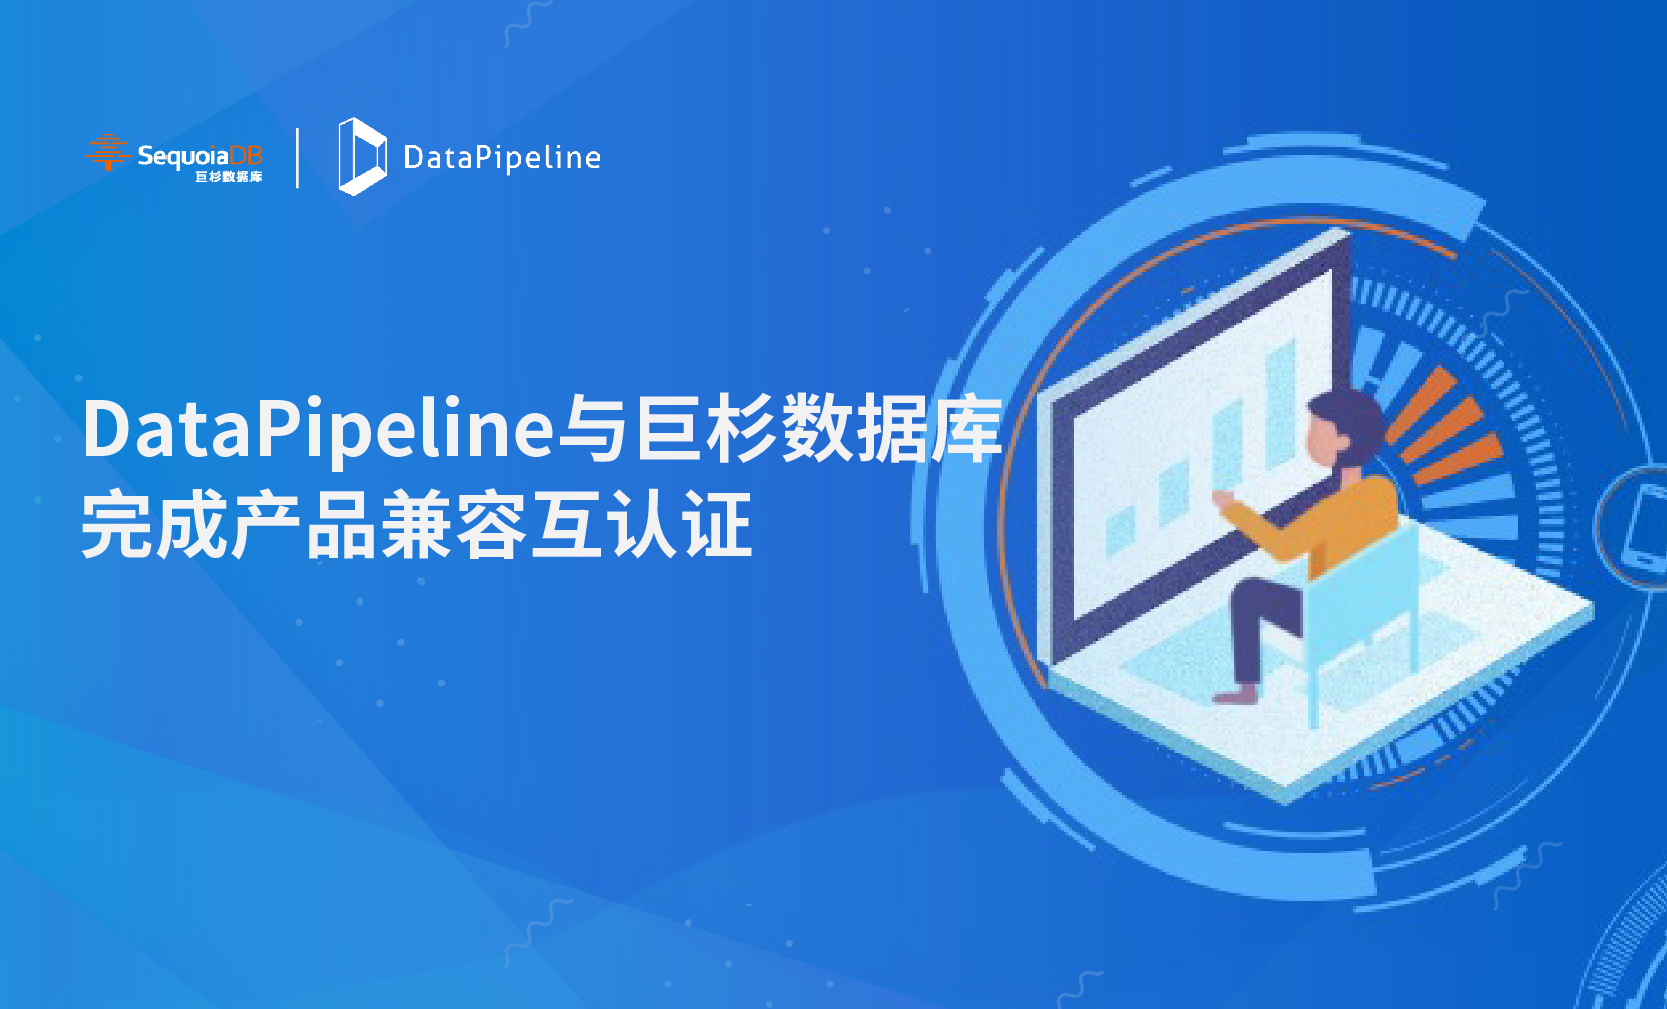 构建智慧金融新引擎｜DataPipeline与巨杉数据库完成产品兼容互认证